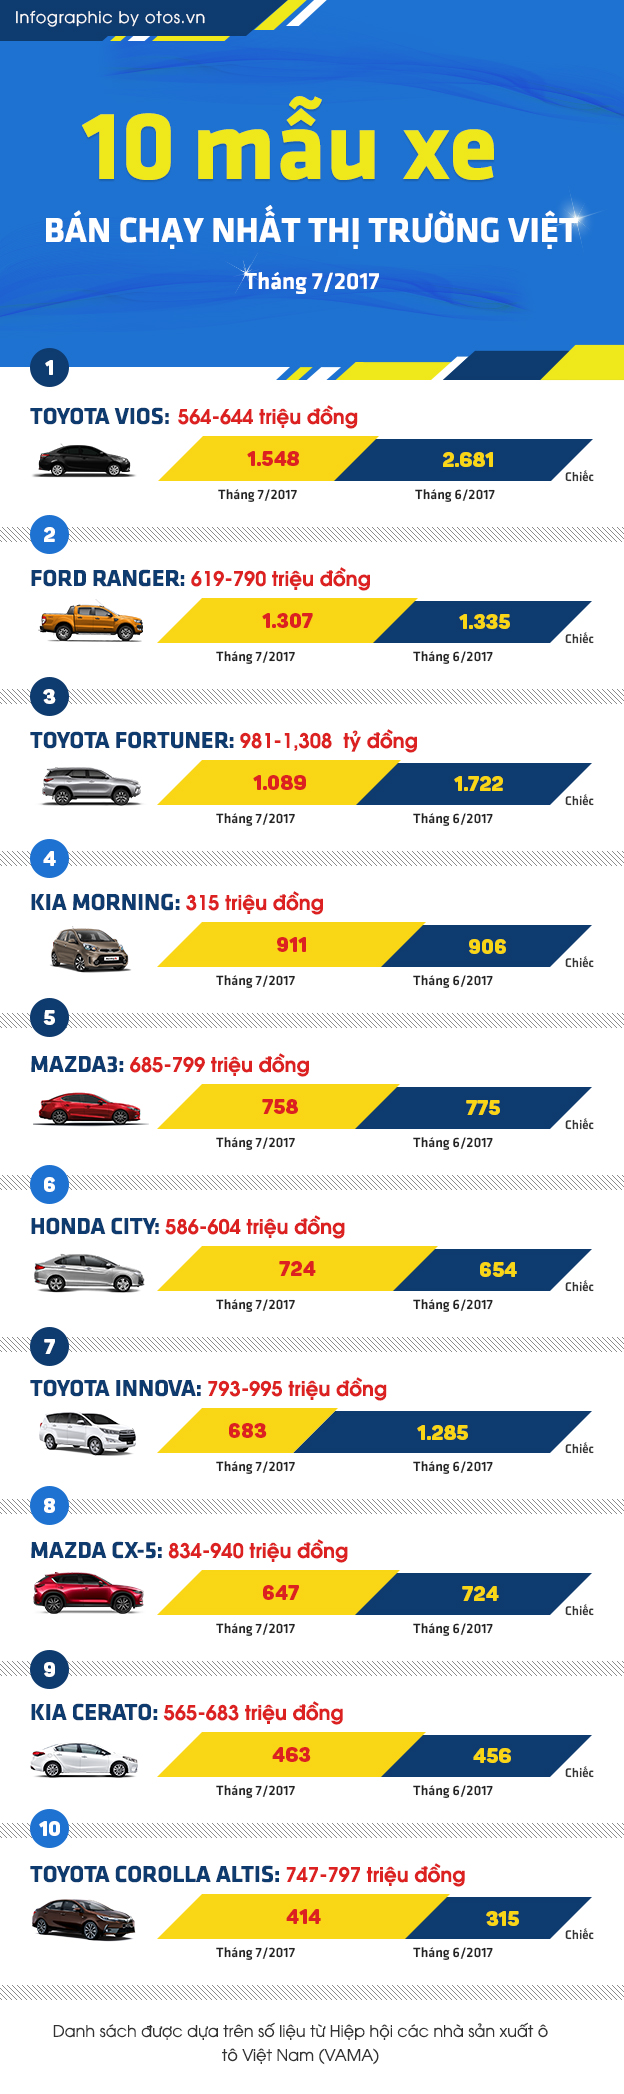 10 mẫu xe bán chạy nhất thị trường Việt tháng 7/2017: Toyota Vios vẫn vô địch